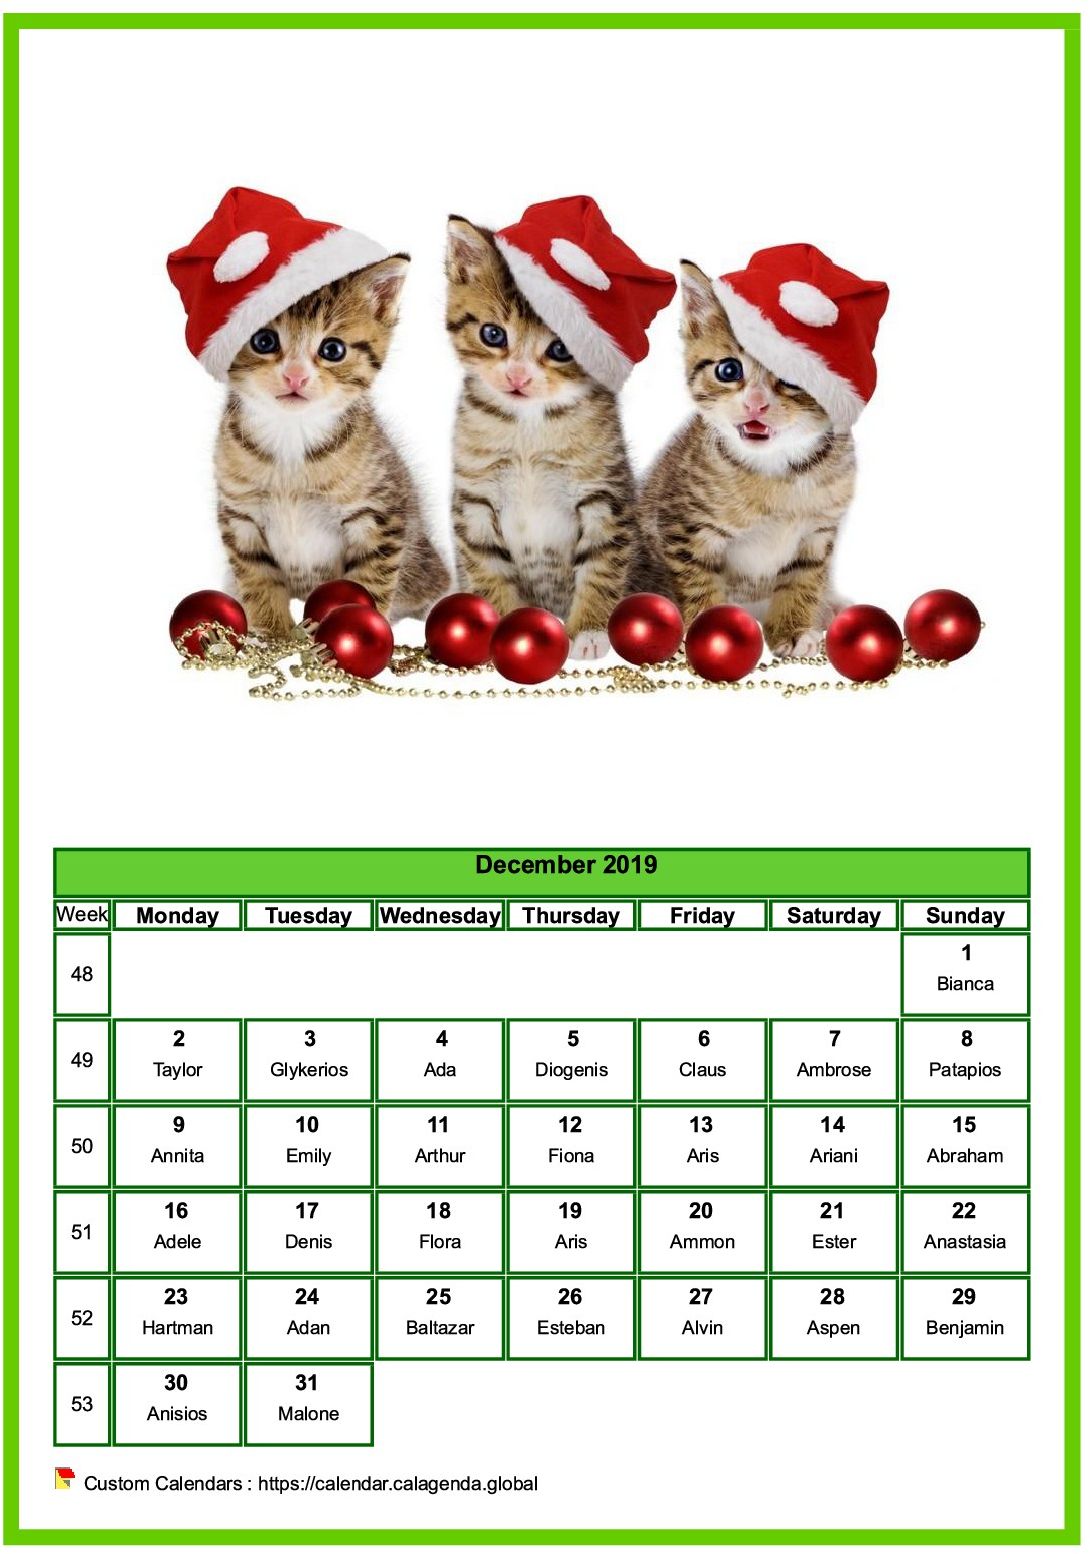 Calendar December 2019 cats